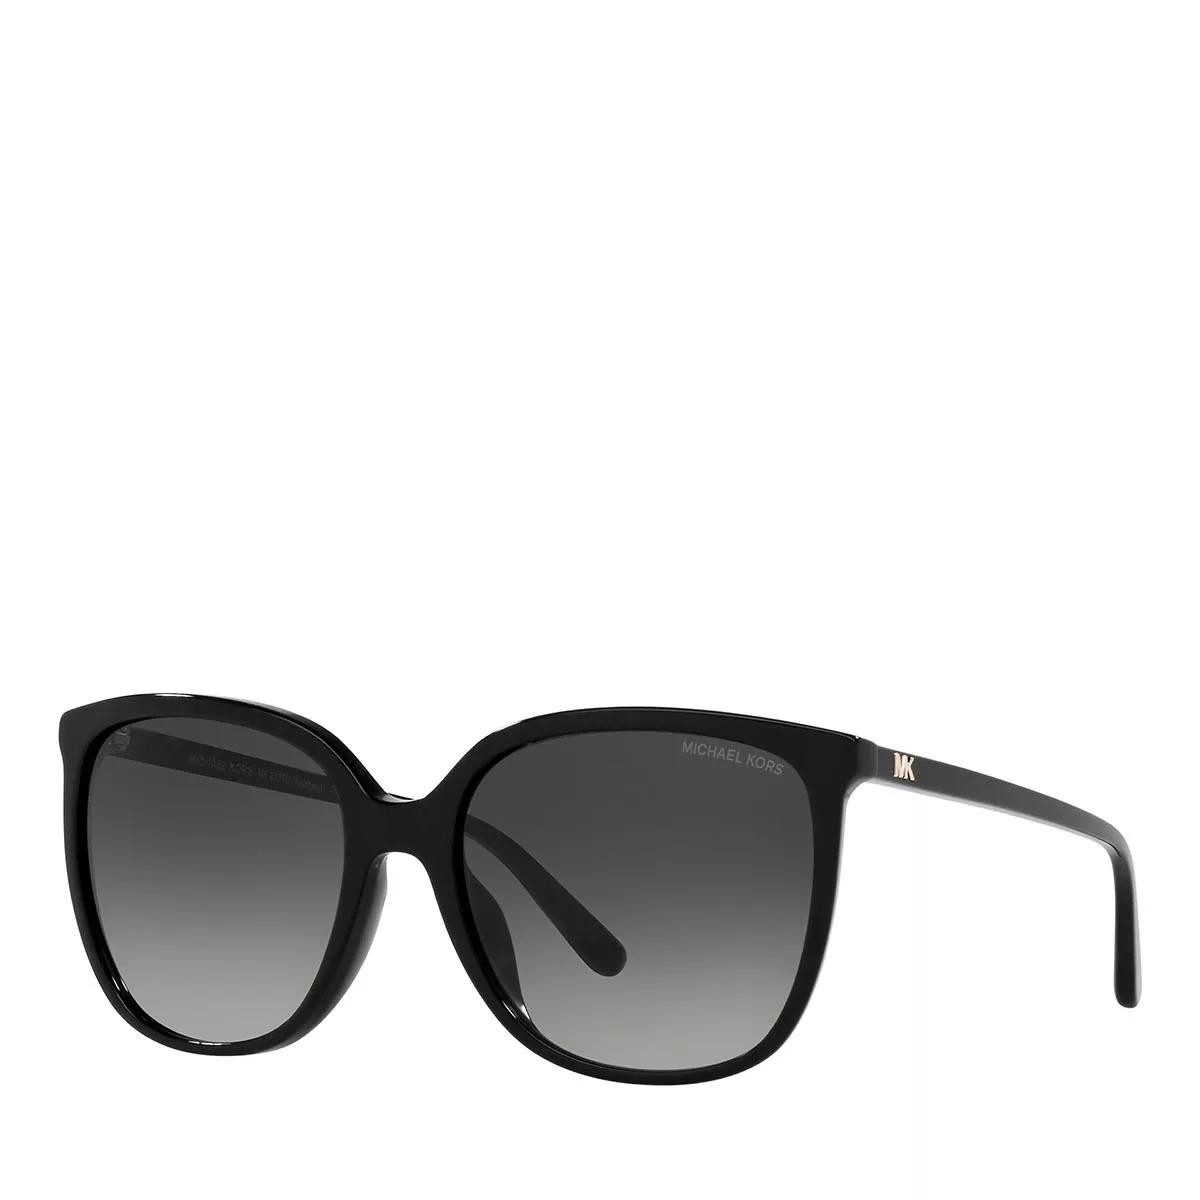 MICHAEL KORS Sonnenbrille black (1-St)